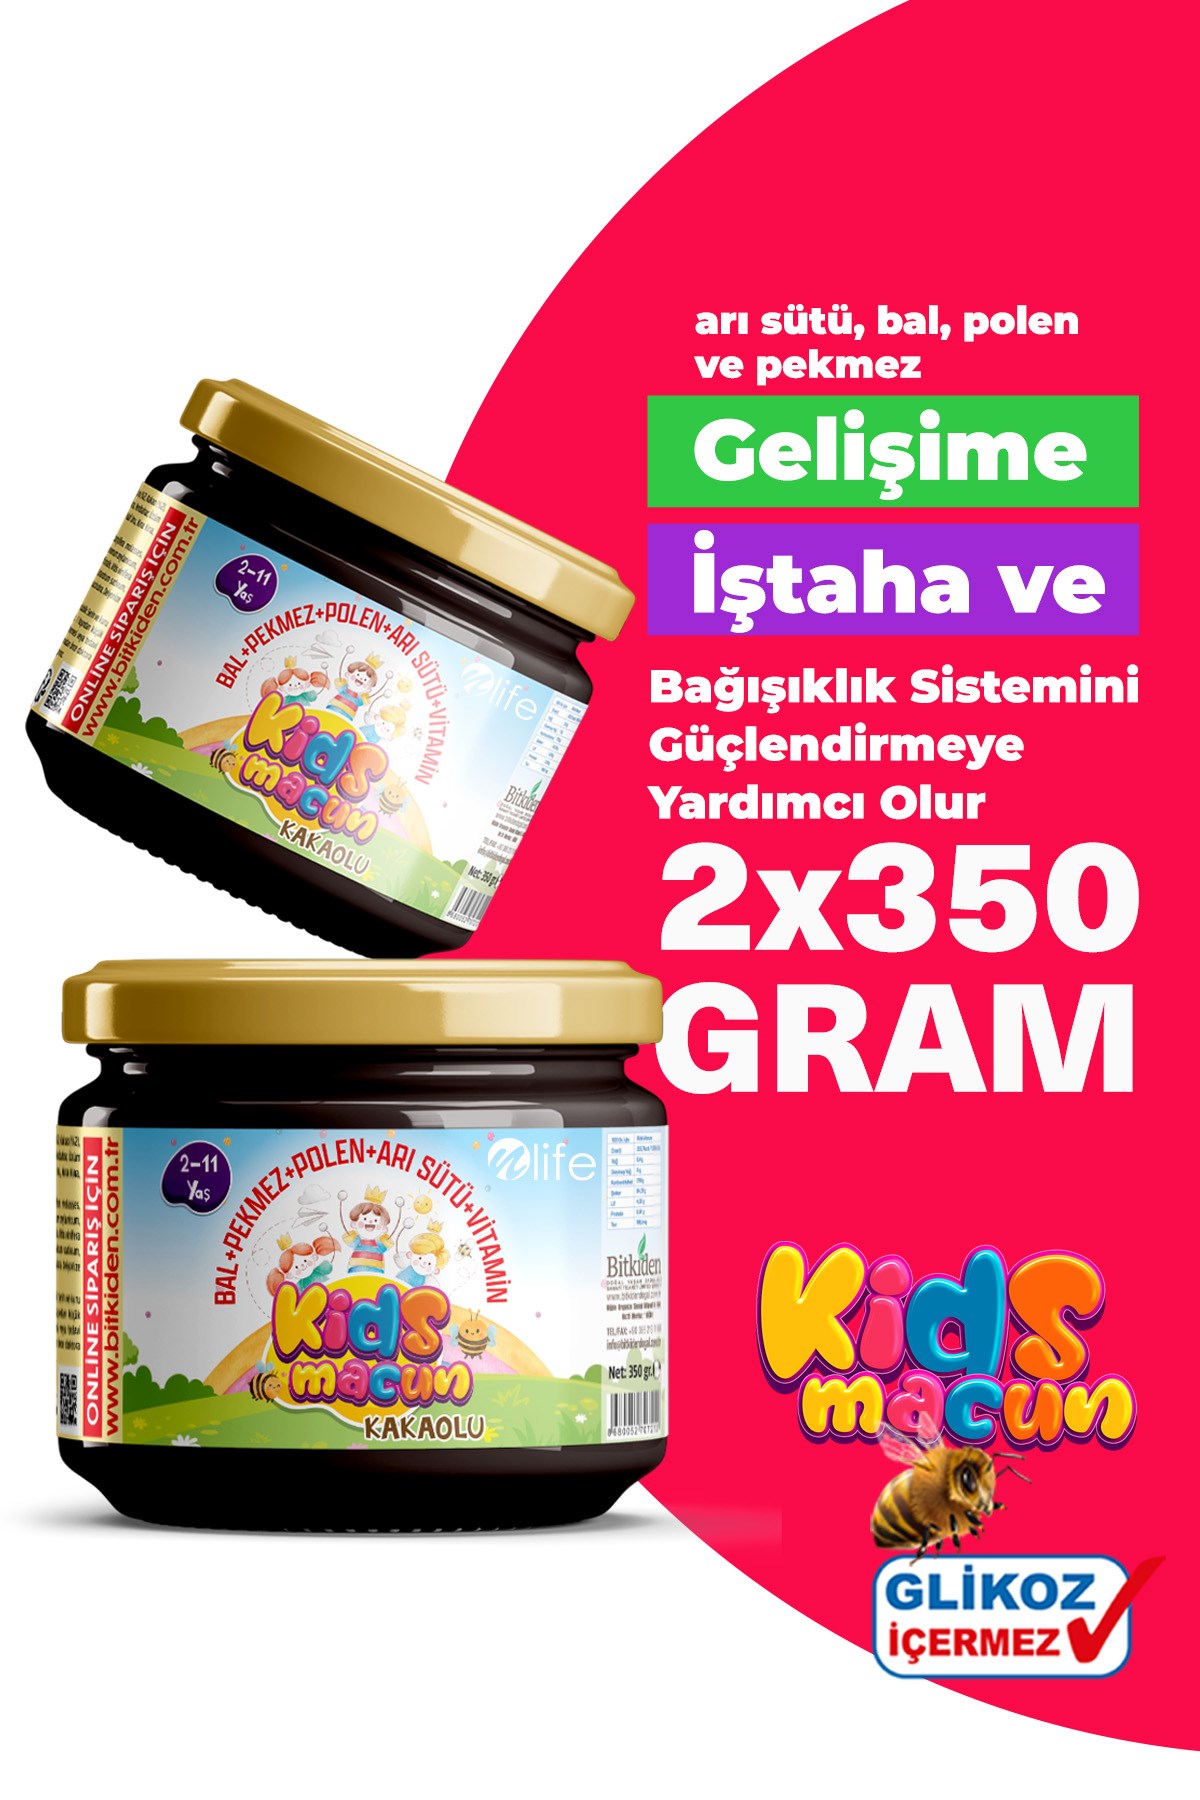 Kids Macun Çocuklara Özel Glikozsuz Bal Pekmez Polen ve Arı Sütü 2 li Set  Kakaolu 2x350